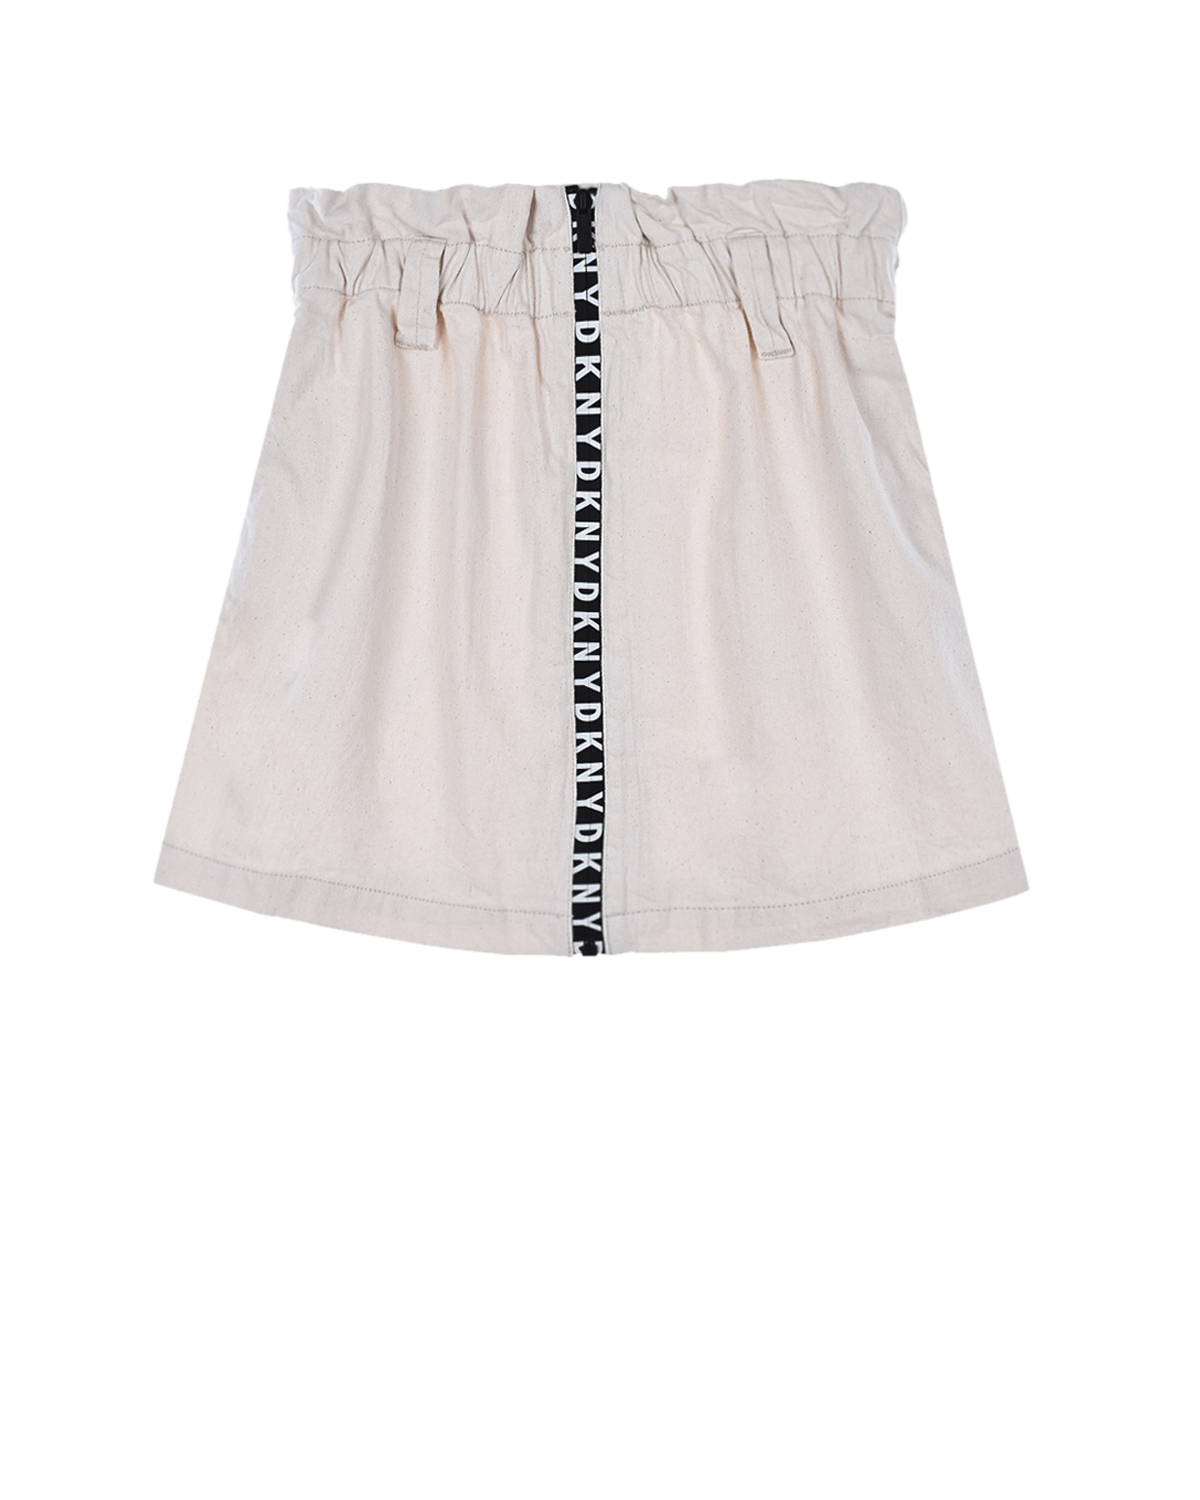 Купить Кремовая юбка на молнии DKNY детская, Кремовый, 100%хлопок